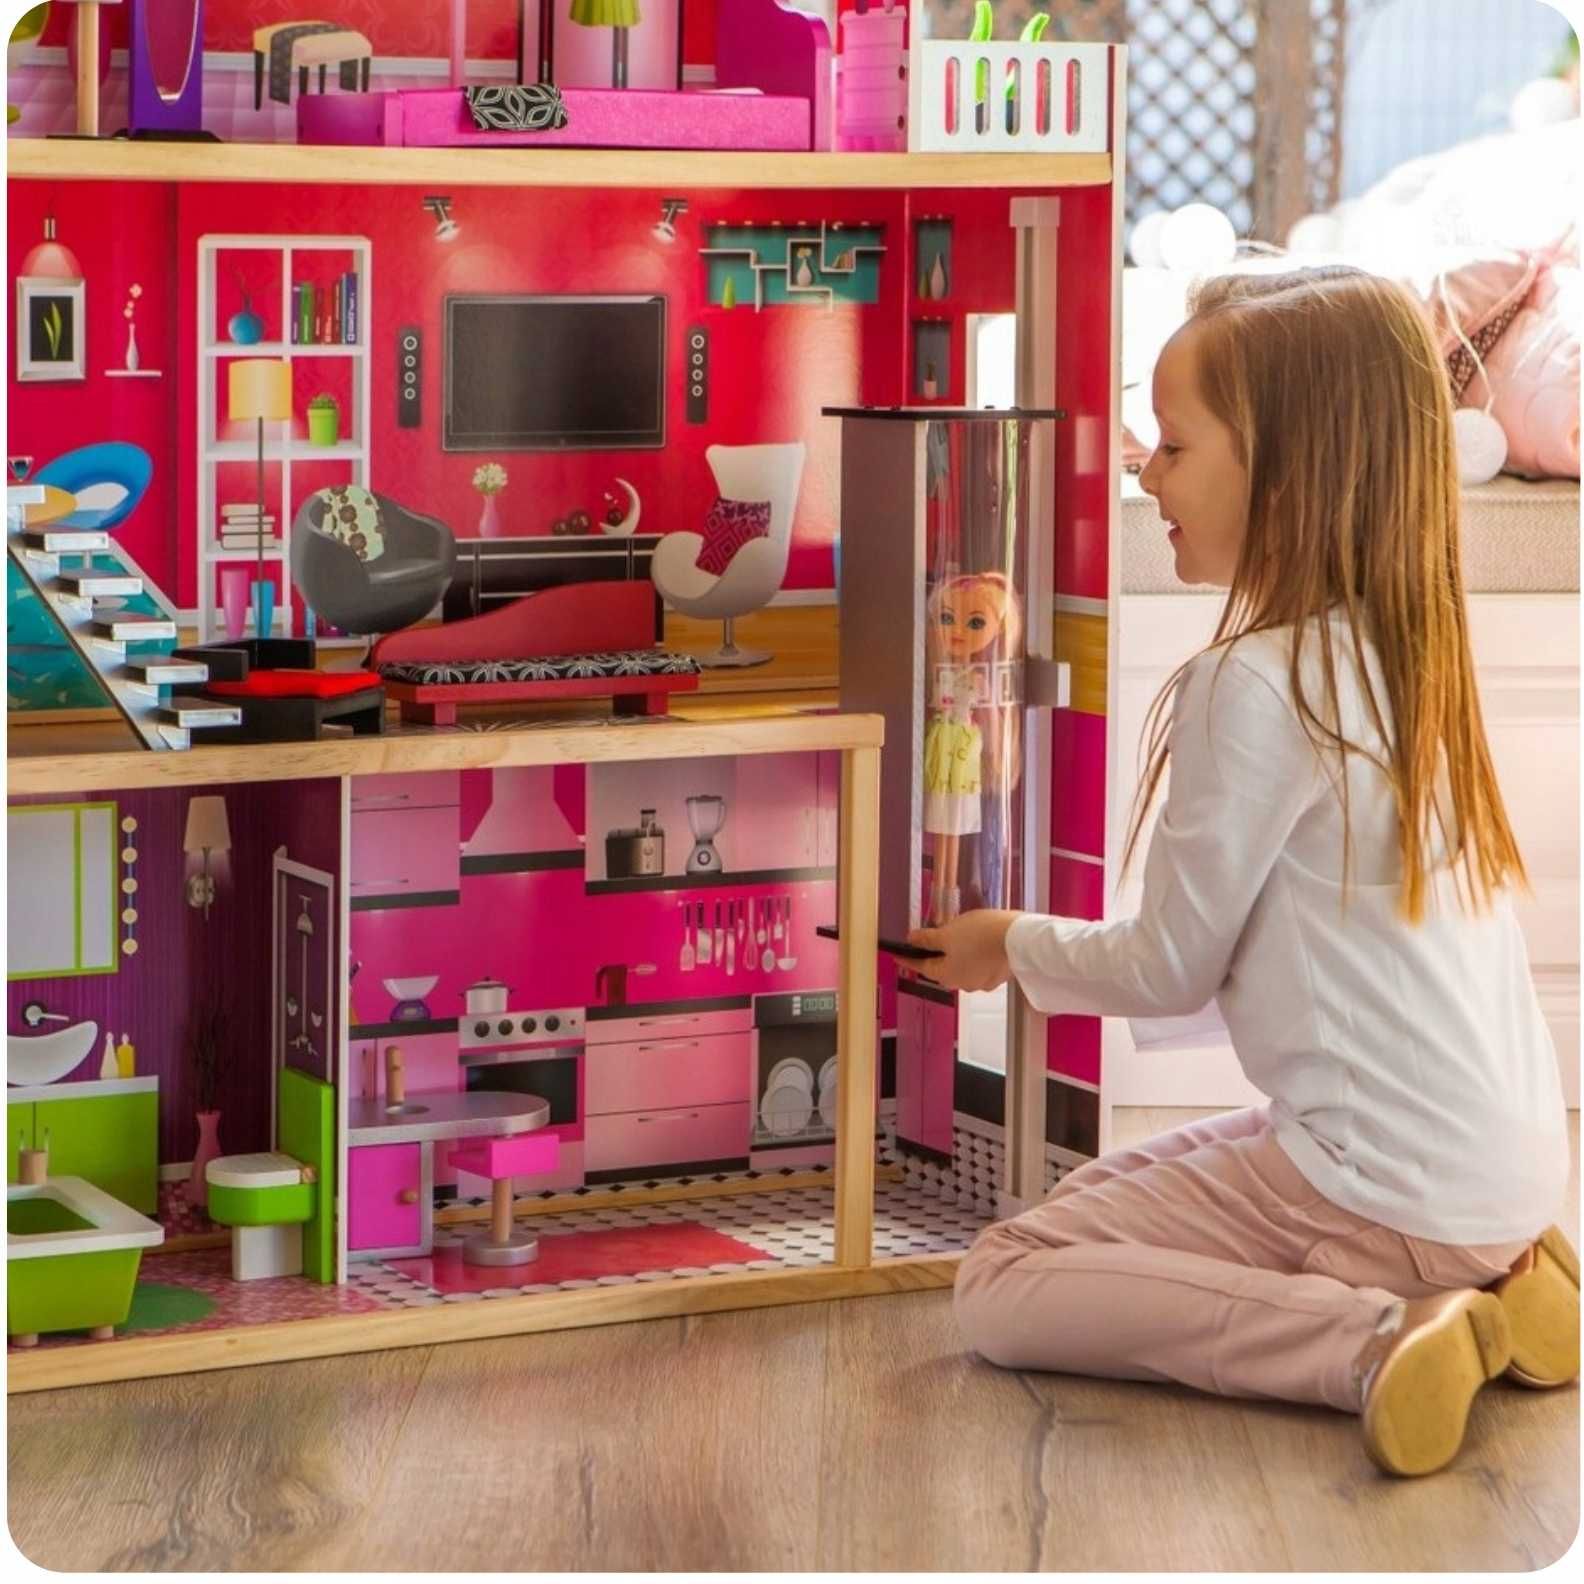 Кукольный домик Малибу будиночок ляльковий с мебелью +подарок кукла!